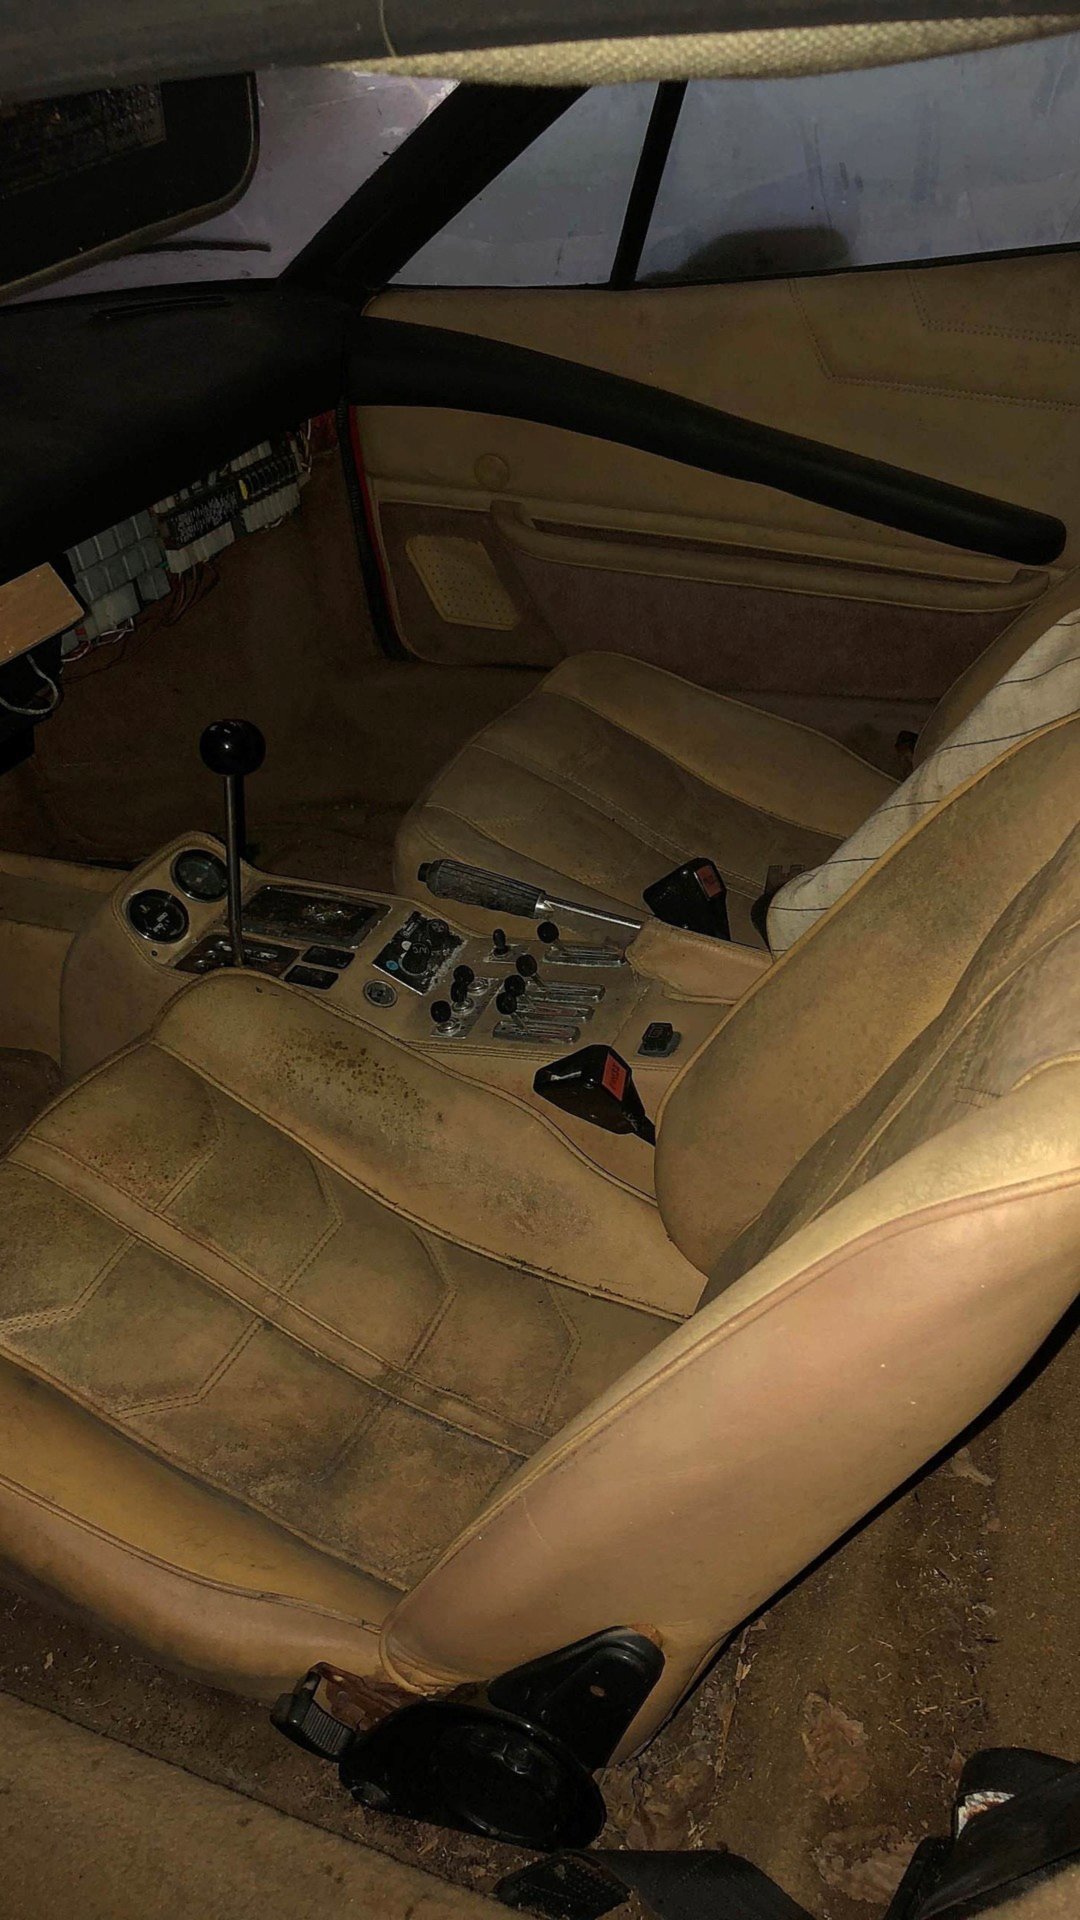 Vzácné Lamborghini Countach stojí přes 20 let ukryto v garáži spolu s dalšími skvosty